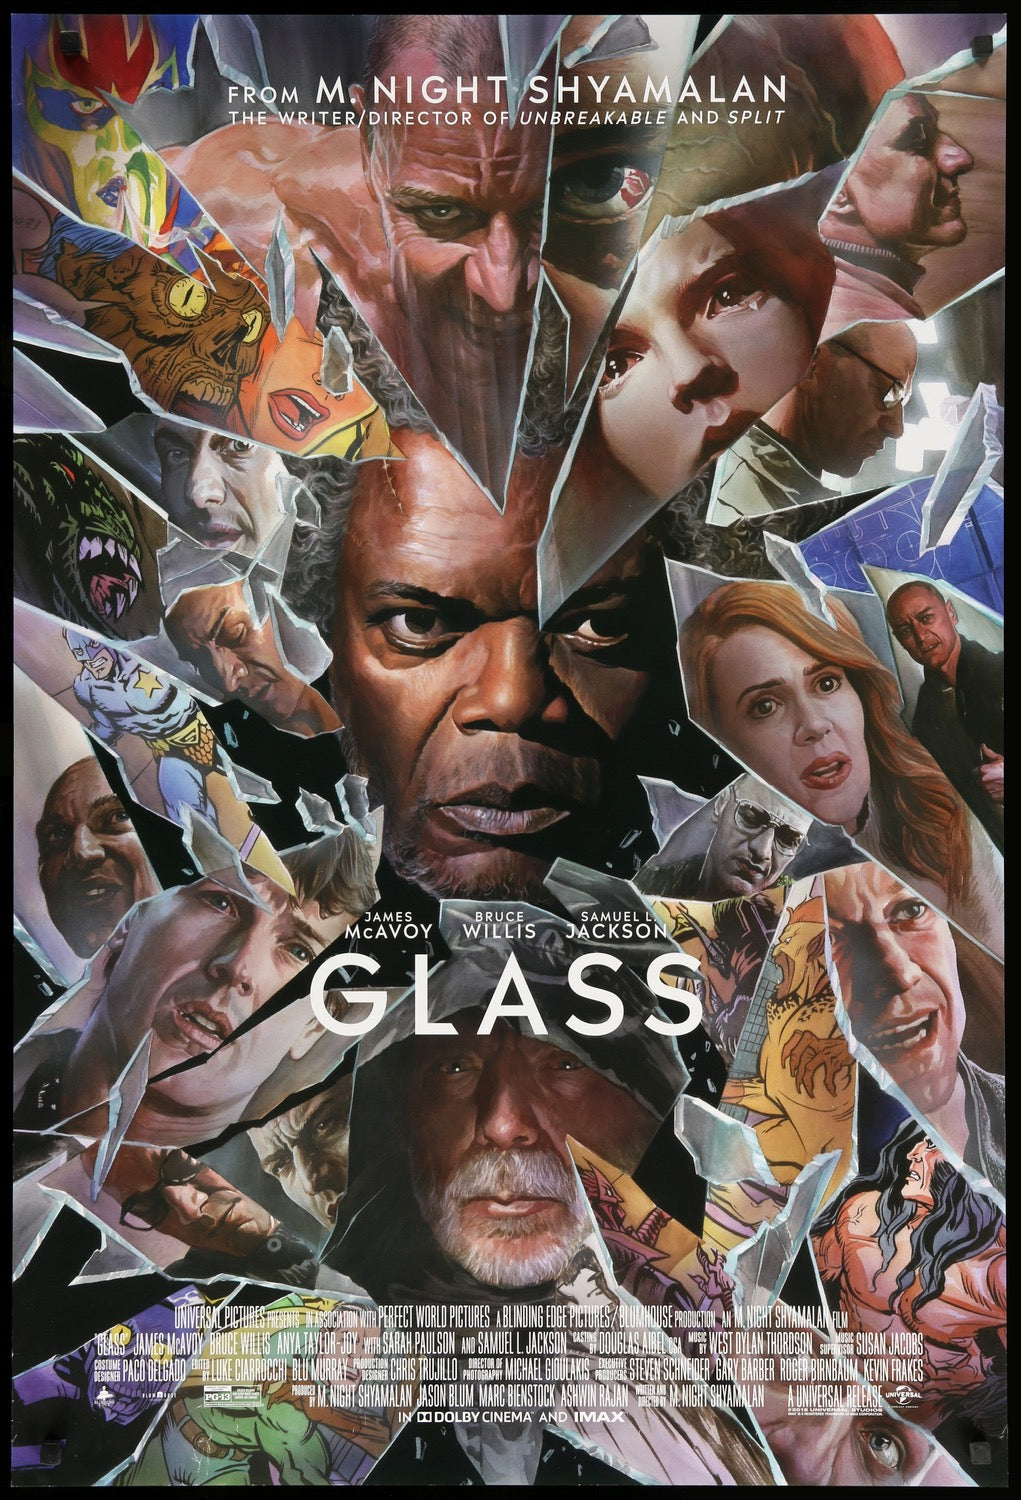 Glass (2019) original movie poster for sale at Original Film Art